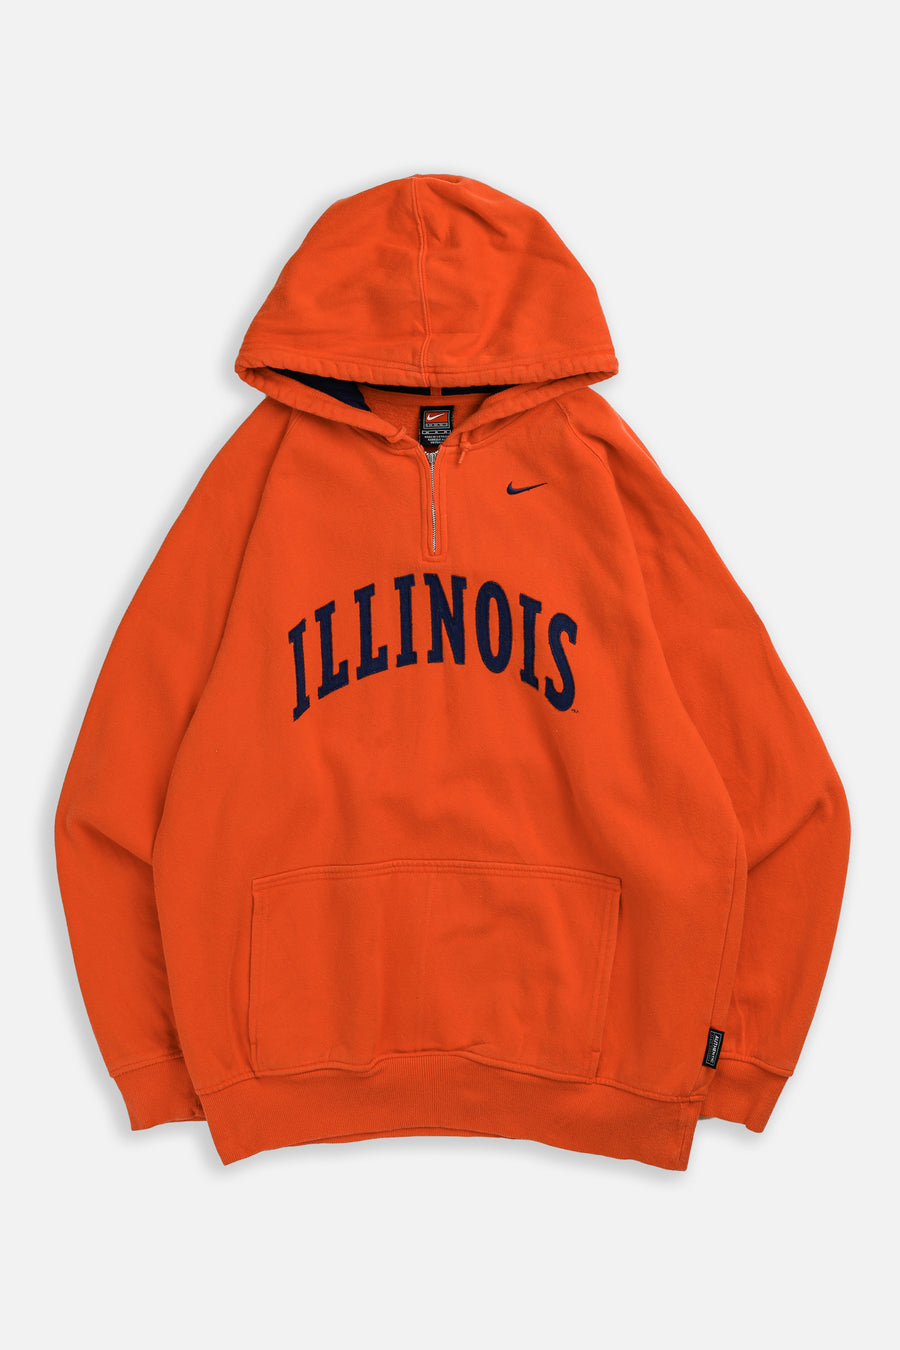 Vintage Illinois Nike Team Sweatshirt - M